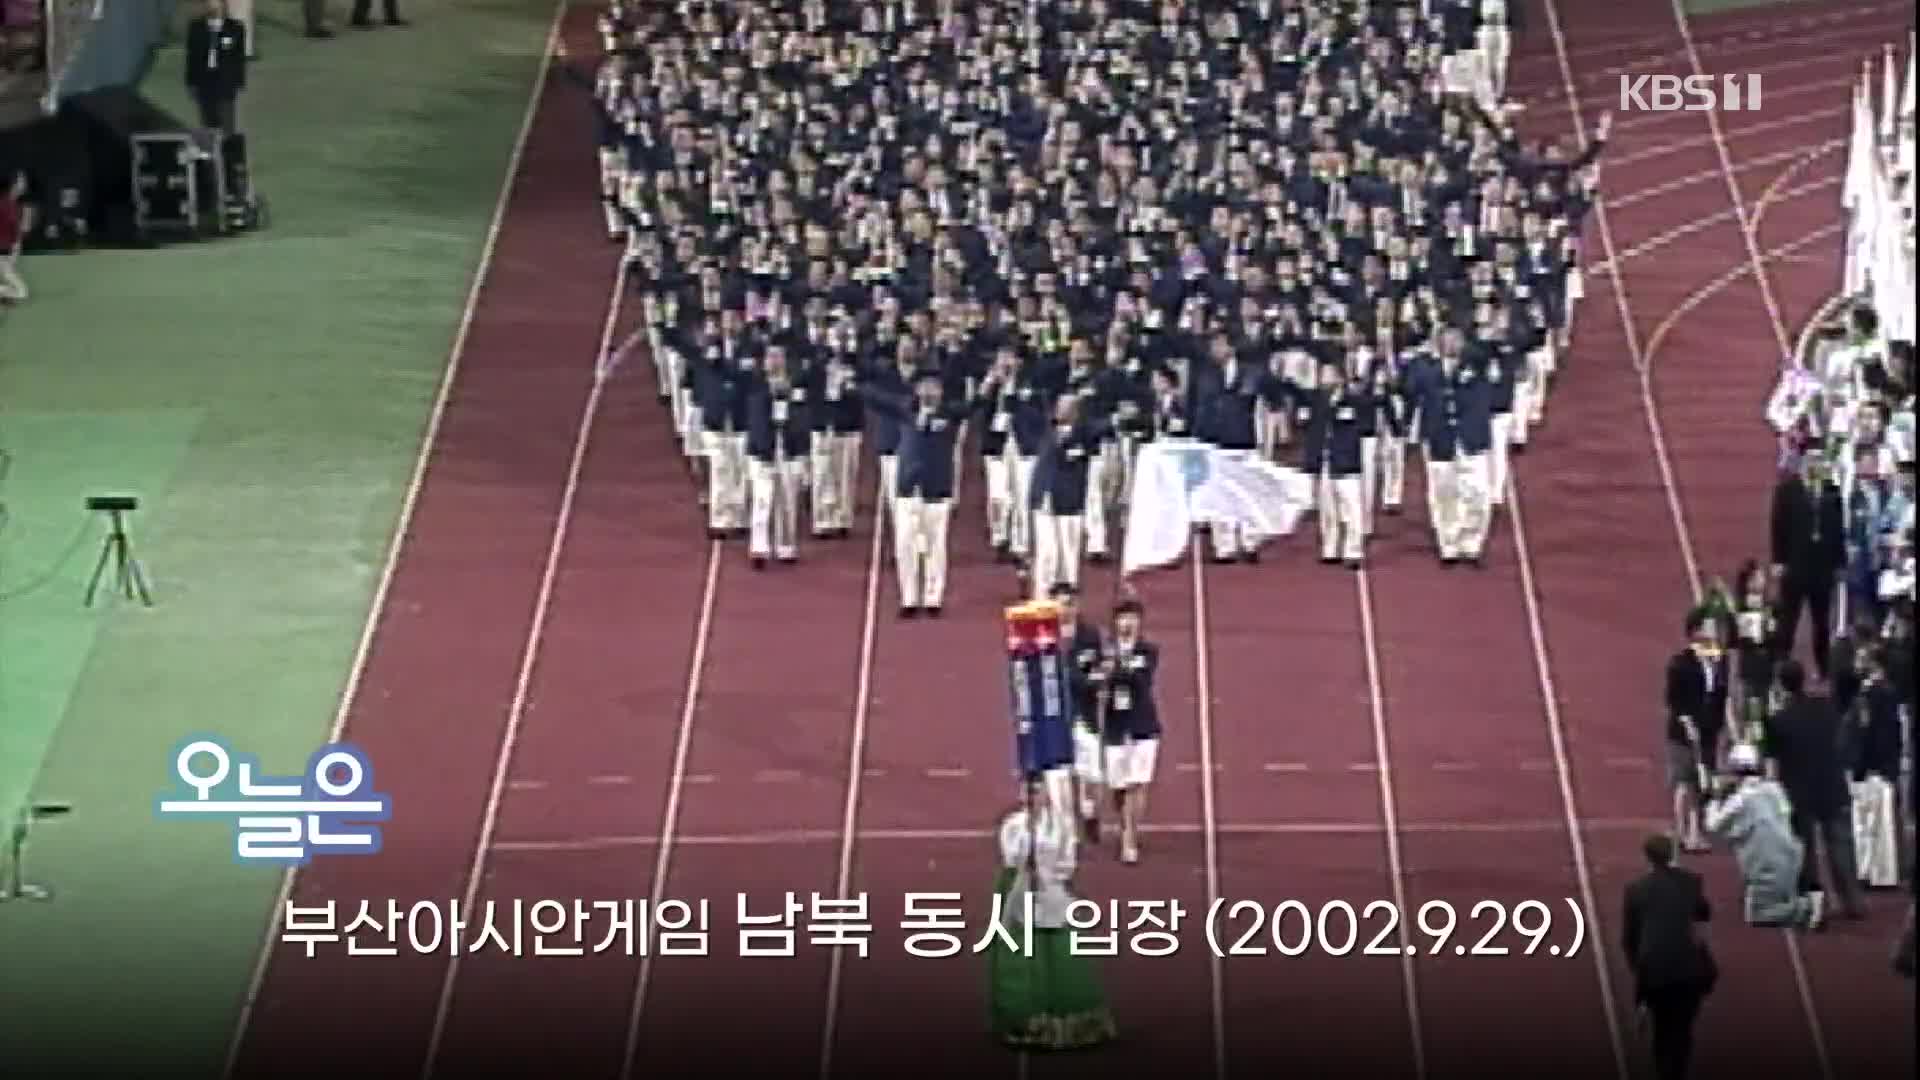 [오늘은] 부산아시안게임 남북 동시 입장 (2002.9.29.)